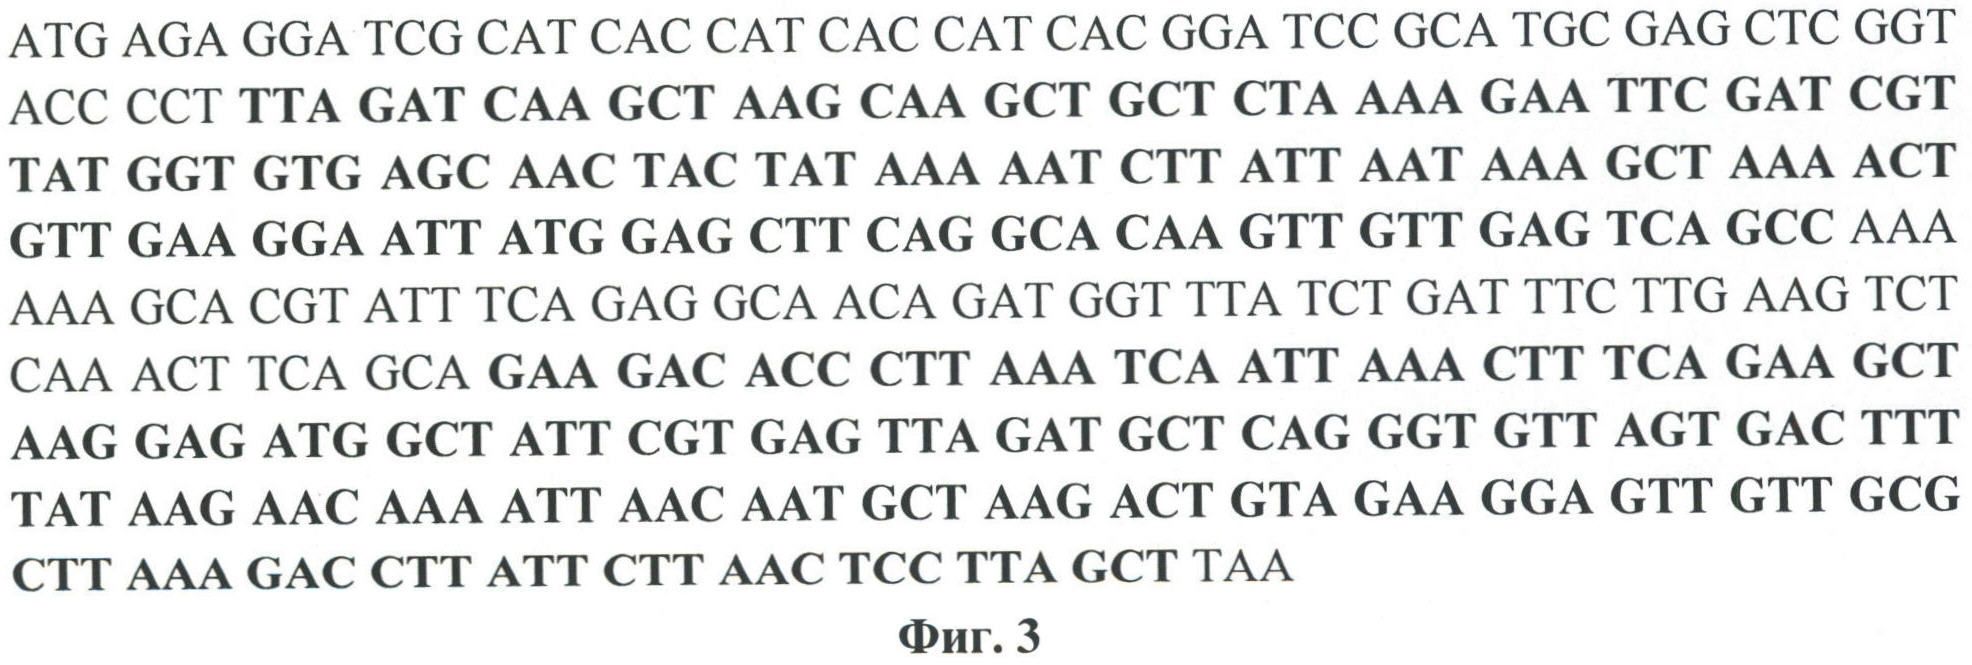 РЕКОМБИНАНТНАЯ ДНК pA3, РЕКОМБИНАНТНАЯ ДНК pQE 30-pA3, ОБЕСПЕЧИВАЮЩИЕ ПОЛУЧЕНИЕ ПОЛИПЕПТИДА A3, ШТАММ E. coli М 15-A3, ТРАНСФОРМИРОВАННЫЙ РЕКОМБИНАНТНОЙ ПЛАЗМИДНОЙ ДНК pQE 30-pA3 И ЭКСПРЕССИРУЮЩИЙ РЕКОМБИНАНТНЫЙ ПОЛИПЕПТИД A3, РЕКОМБИНАНТНЫЙ ПОЛИПЕПТИД A3, ОБЛАДАЮЩИЙ СПОСОБНОСТЬЮ СЕЛЕКТИВНО СВЯЗЫВАТЬ ЧСА, И ТЕСТ-СИСТЕМА РФА ДЛЯ КАЧЕСТВЕННОГО ВЫЯВЛЕНИЯ МИКРОАЛЬБУМИНУРИИ, ТЕСТ-СИСТЕМА ДЛЯ КОЛИЧЕСТВЕННОГО ОПРЕДЕЛЕНИЯ МИКРОАЛЬБУМИНУРИИ